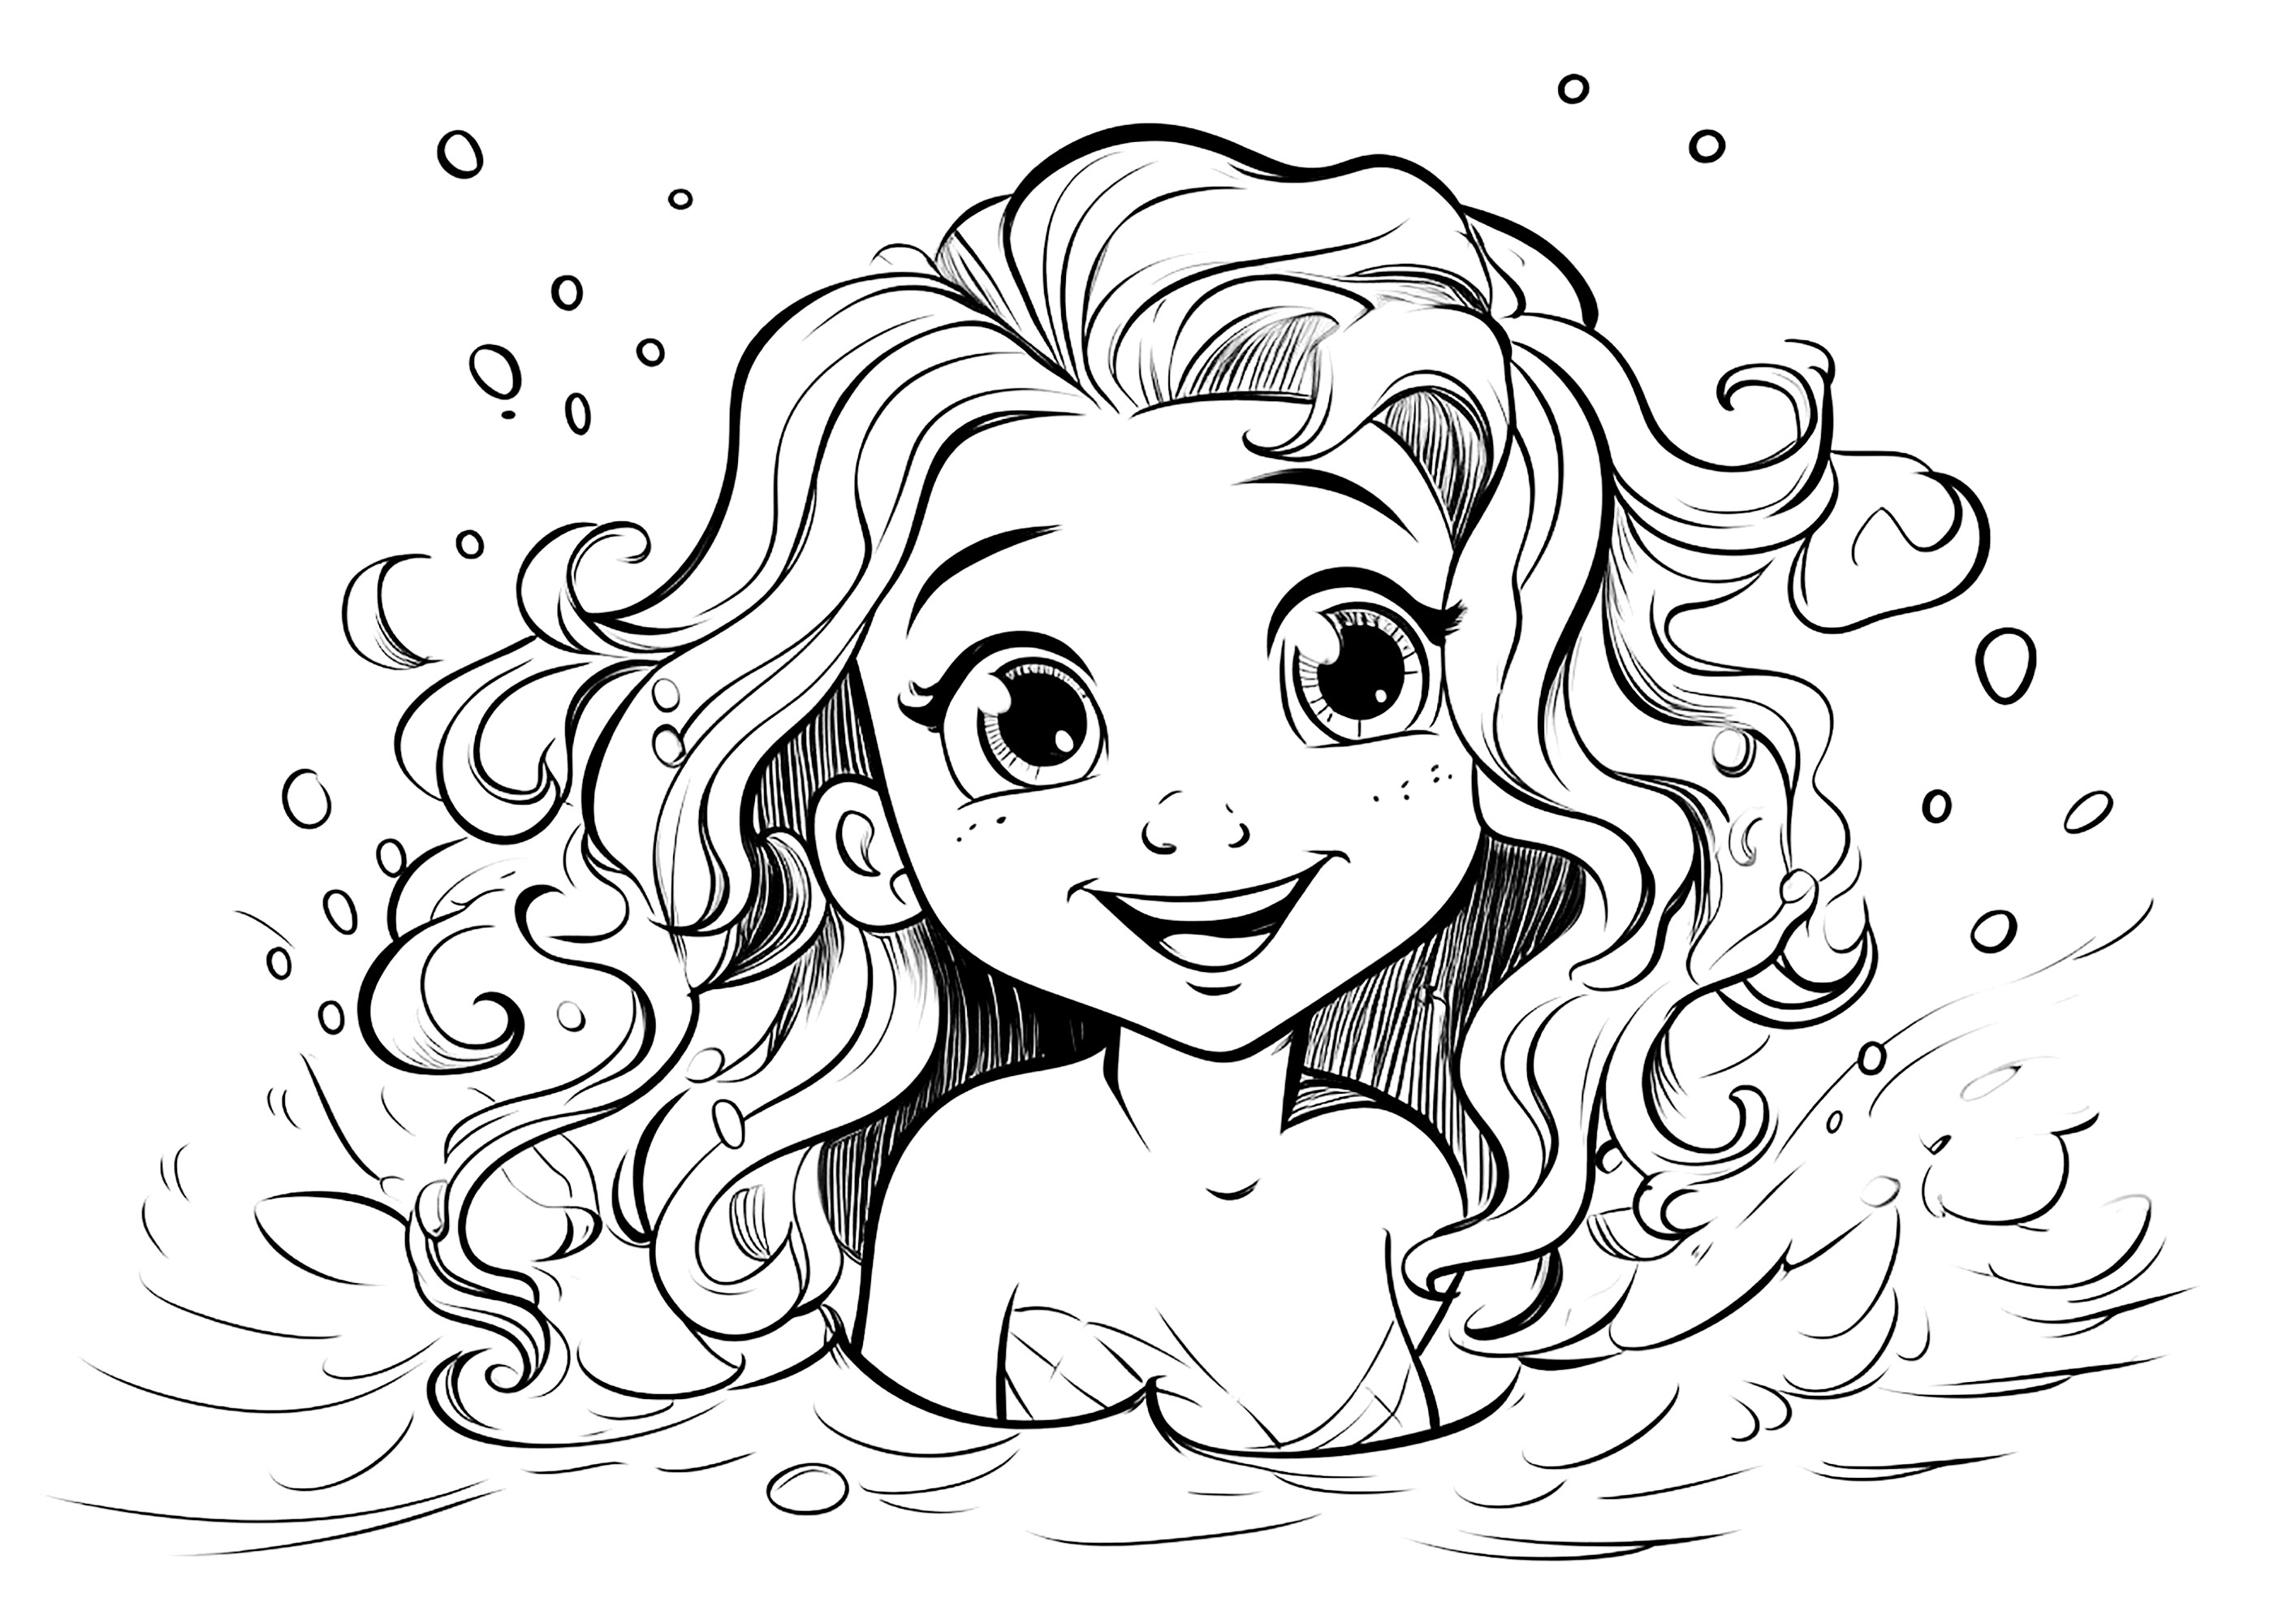 Jolie sirène sortant de la mer. Un dessin inspiré du style Pixar